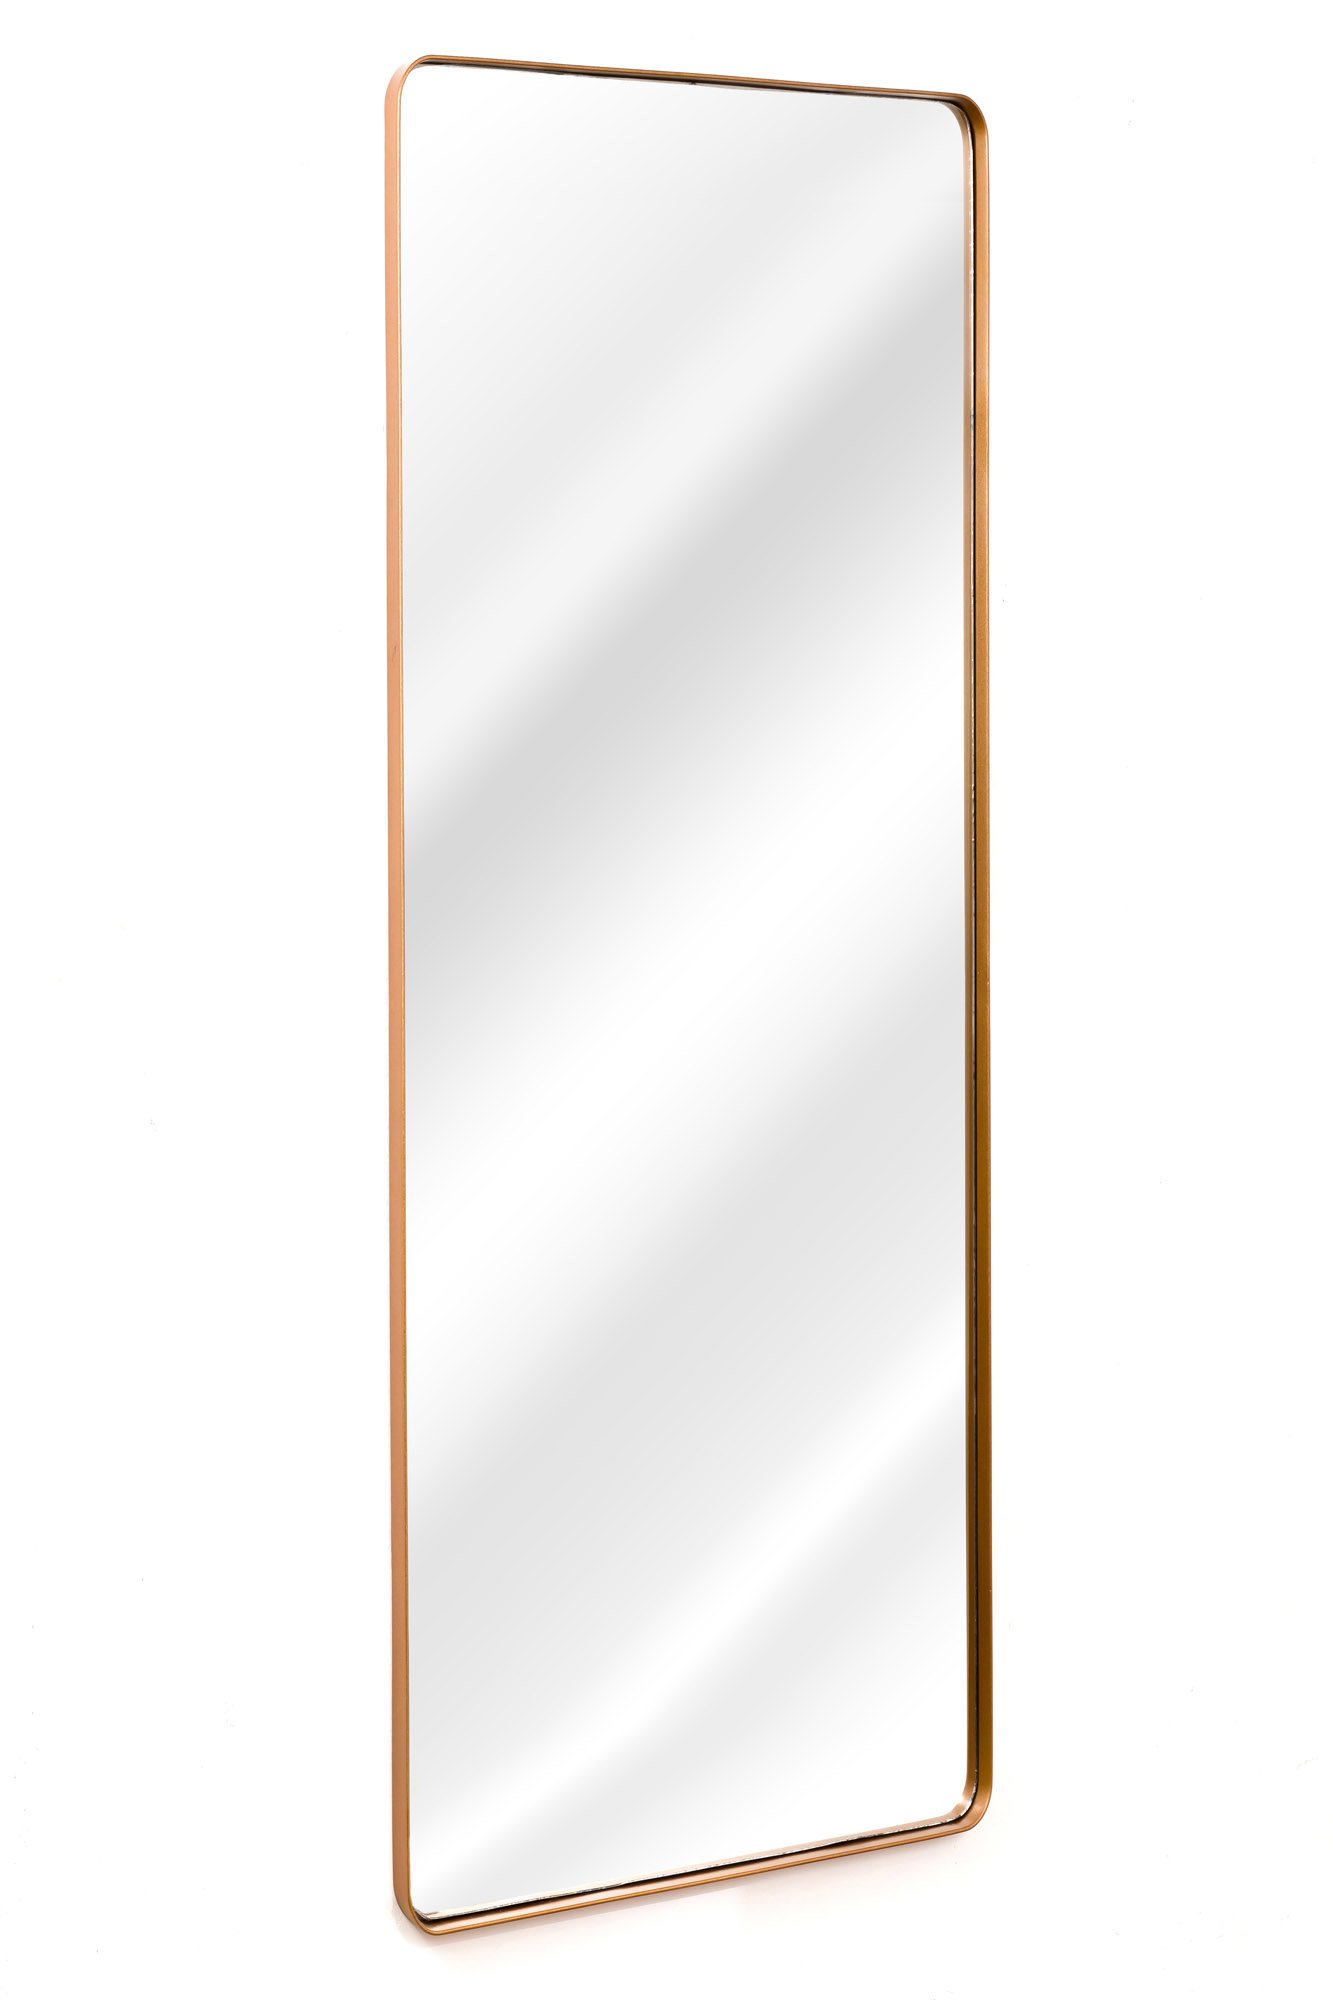 Espelho Grande Corpo Inteiro Retangular com Moldura em Metal Industrial 170 x 70cm Bronze - 2